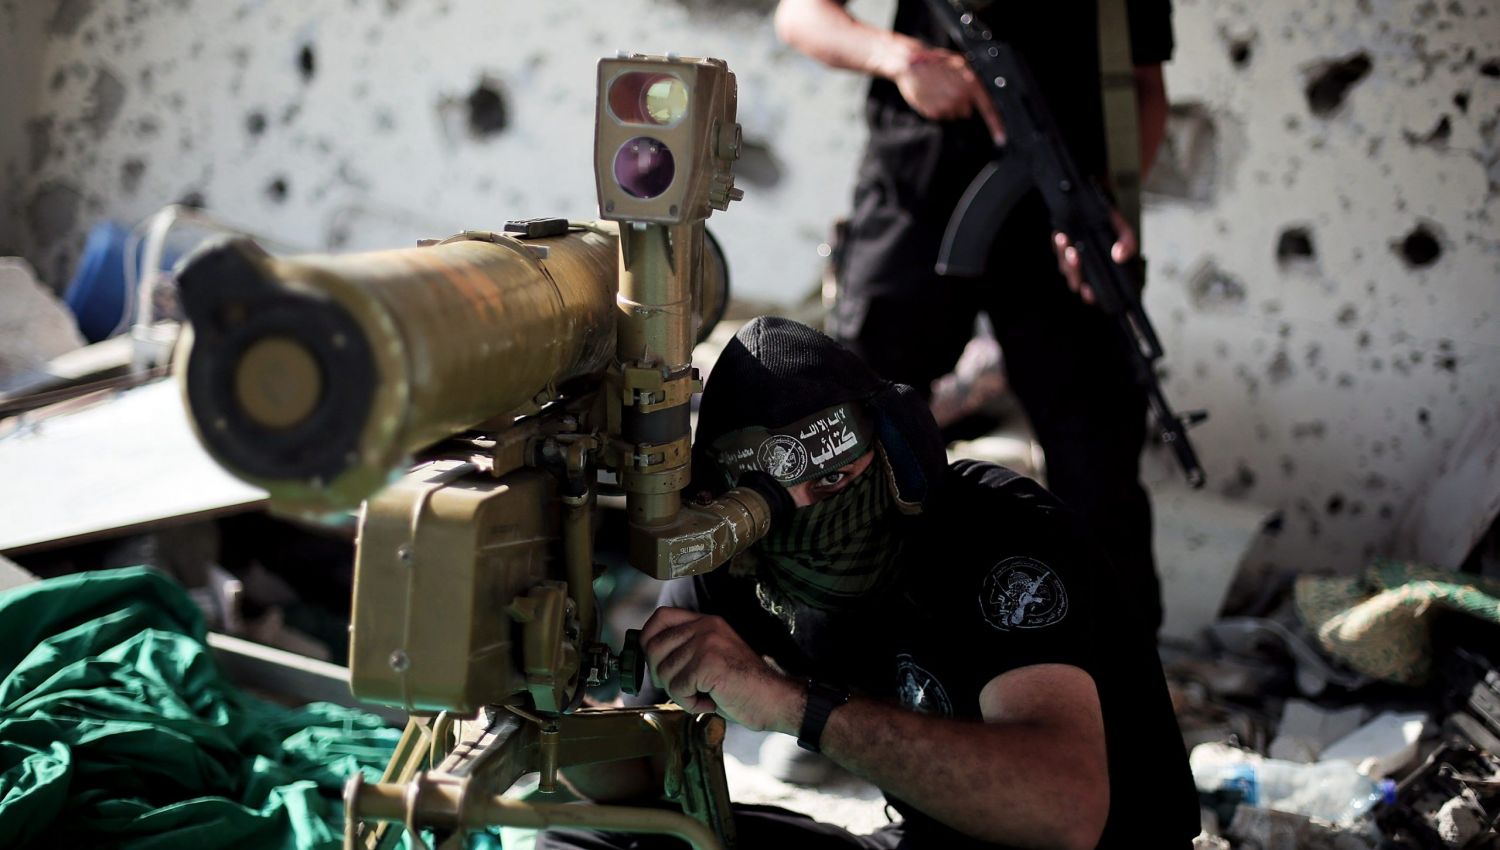 اللواء هاكوهين: ما شهدته "إسرائيل" هو تطبيق لاستراتيجية سليماني